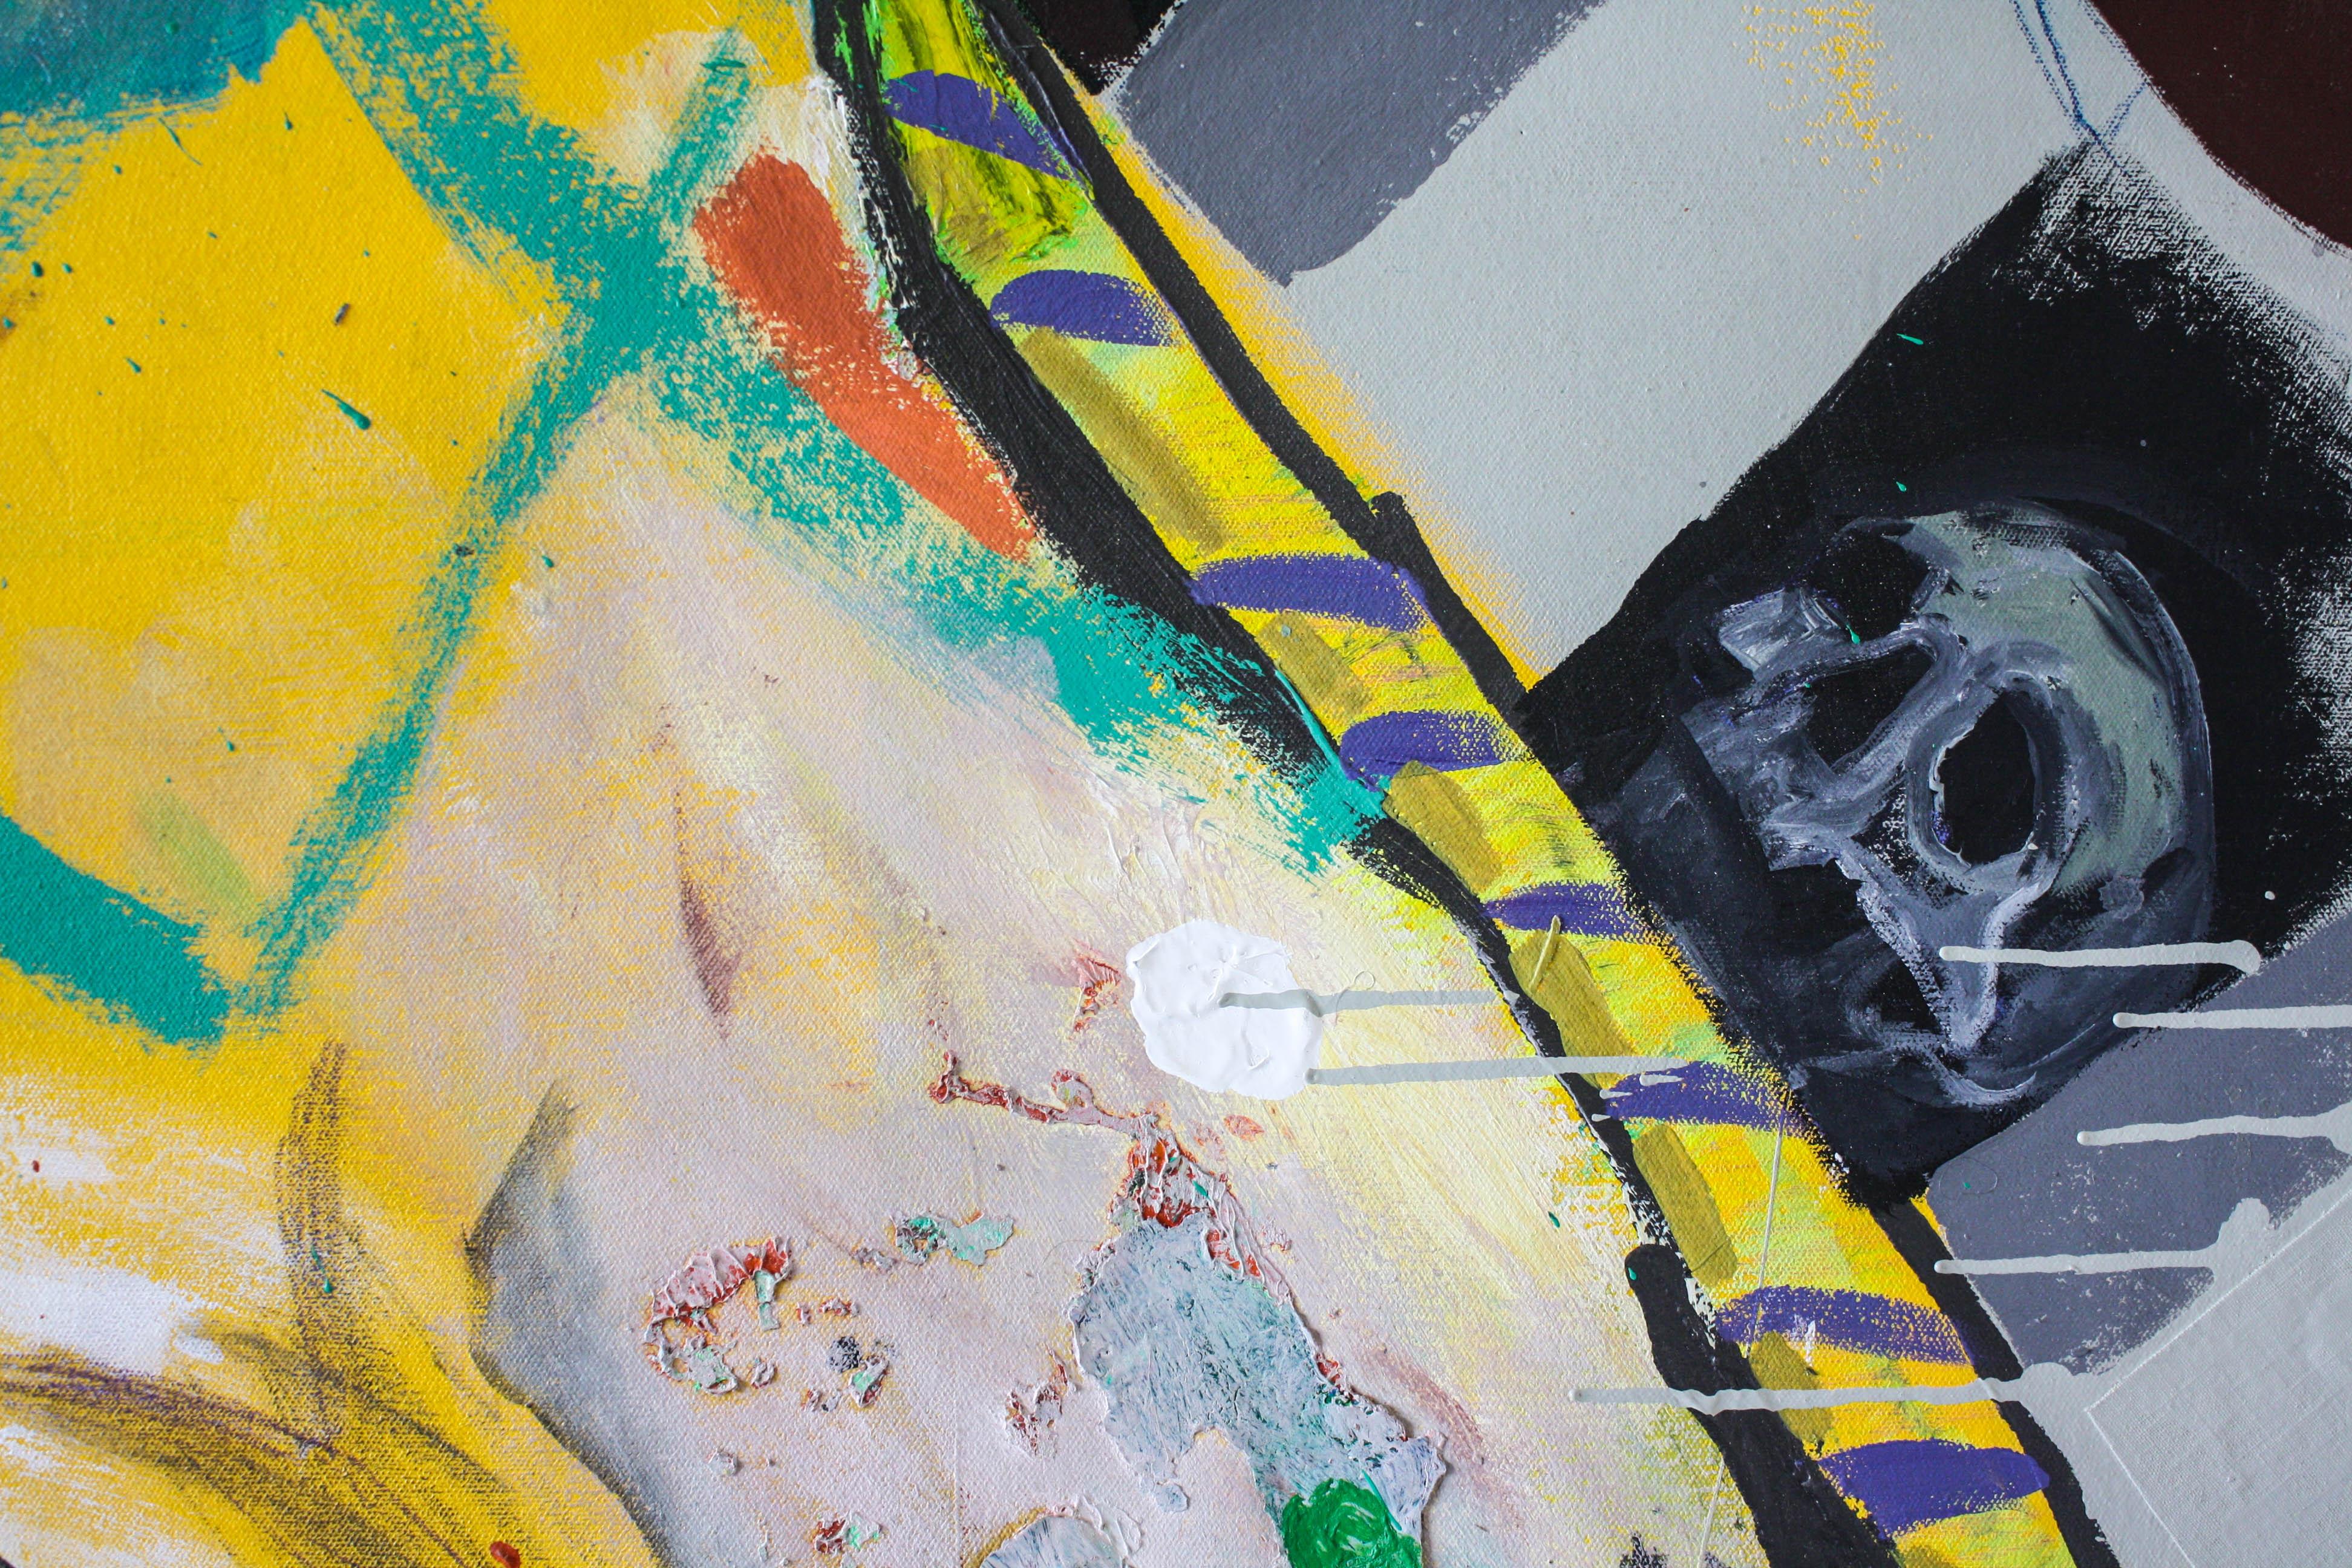 Dieses abstrakte zeitgenössische Porträtgemälde verwendet leuchtendes Blau, Gelb, Rosa und Grün. Hinter der Figur sitzt ein Schachbrettmuster in Schwarz-Weiß. 

Bio
John Paul Kesling wurde 1980 im Ohio River Valley in Ashland, Kentucky, geboren und